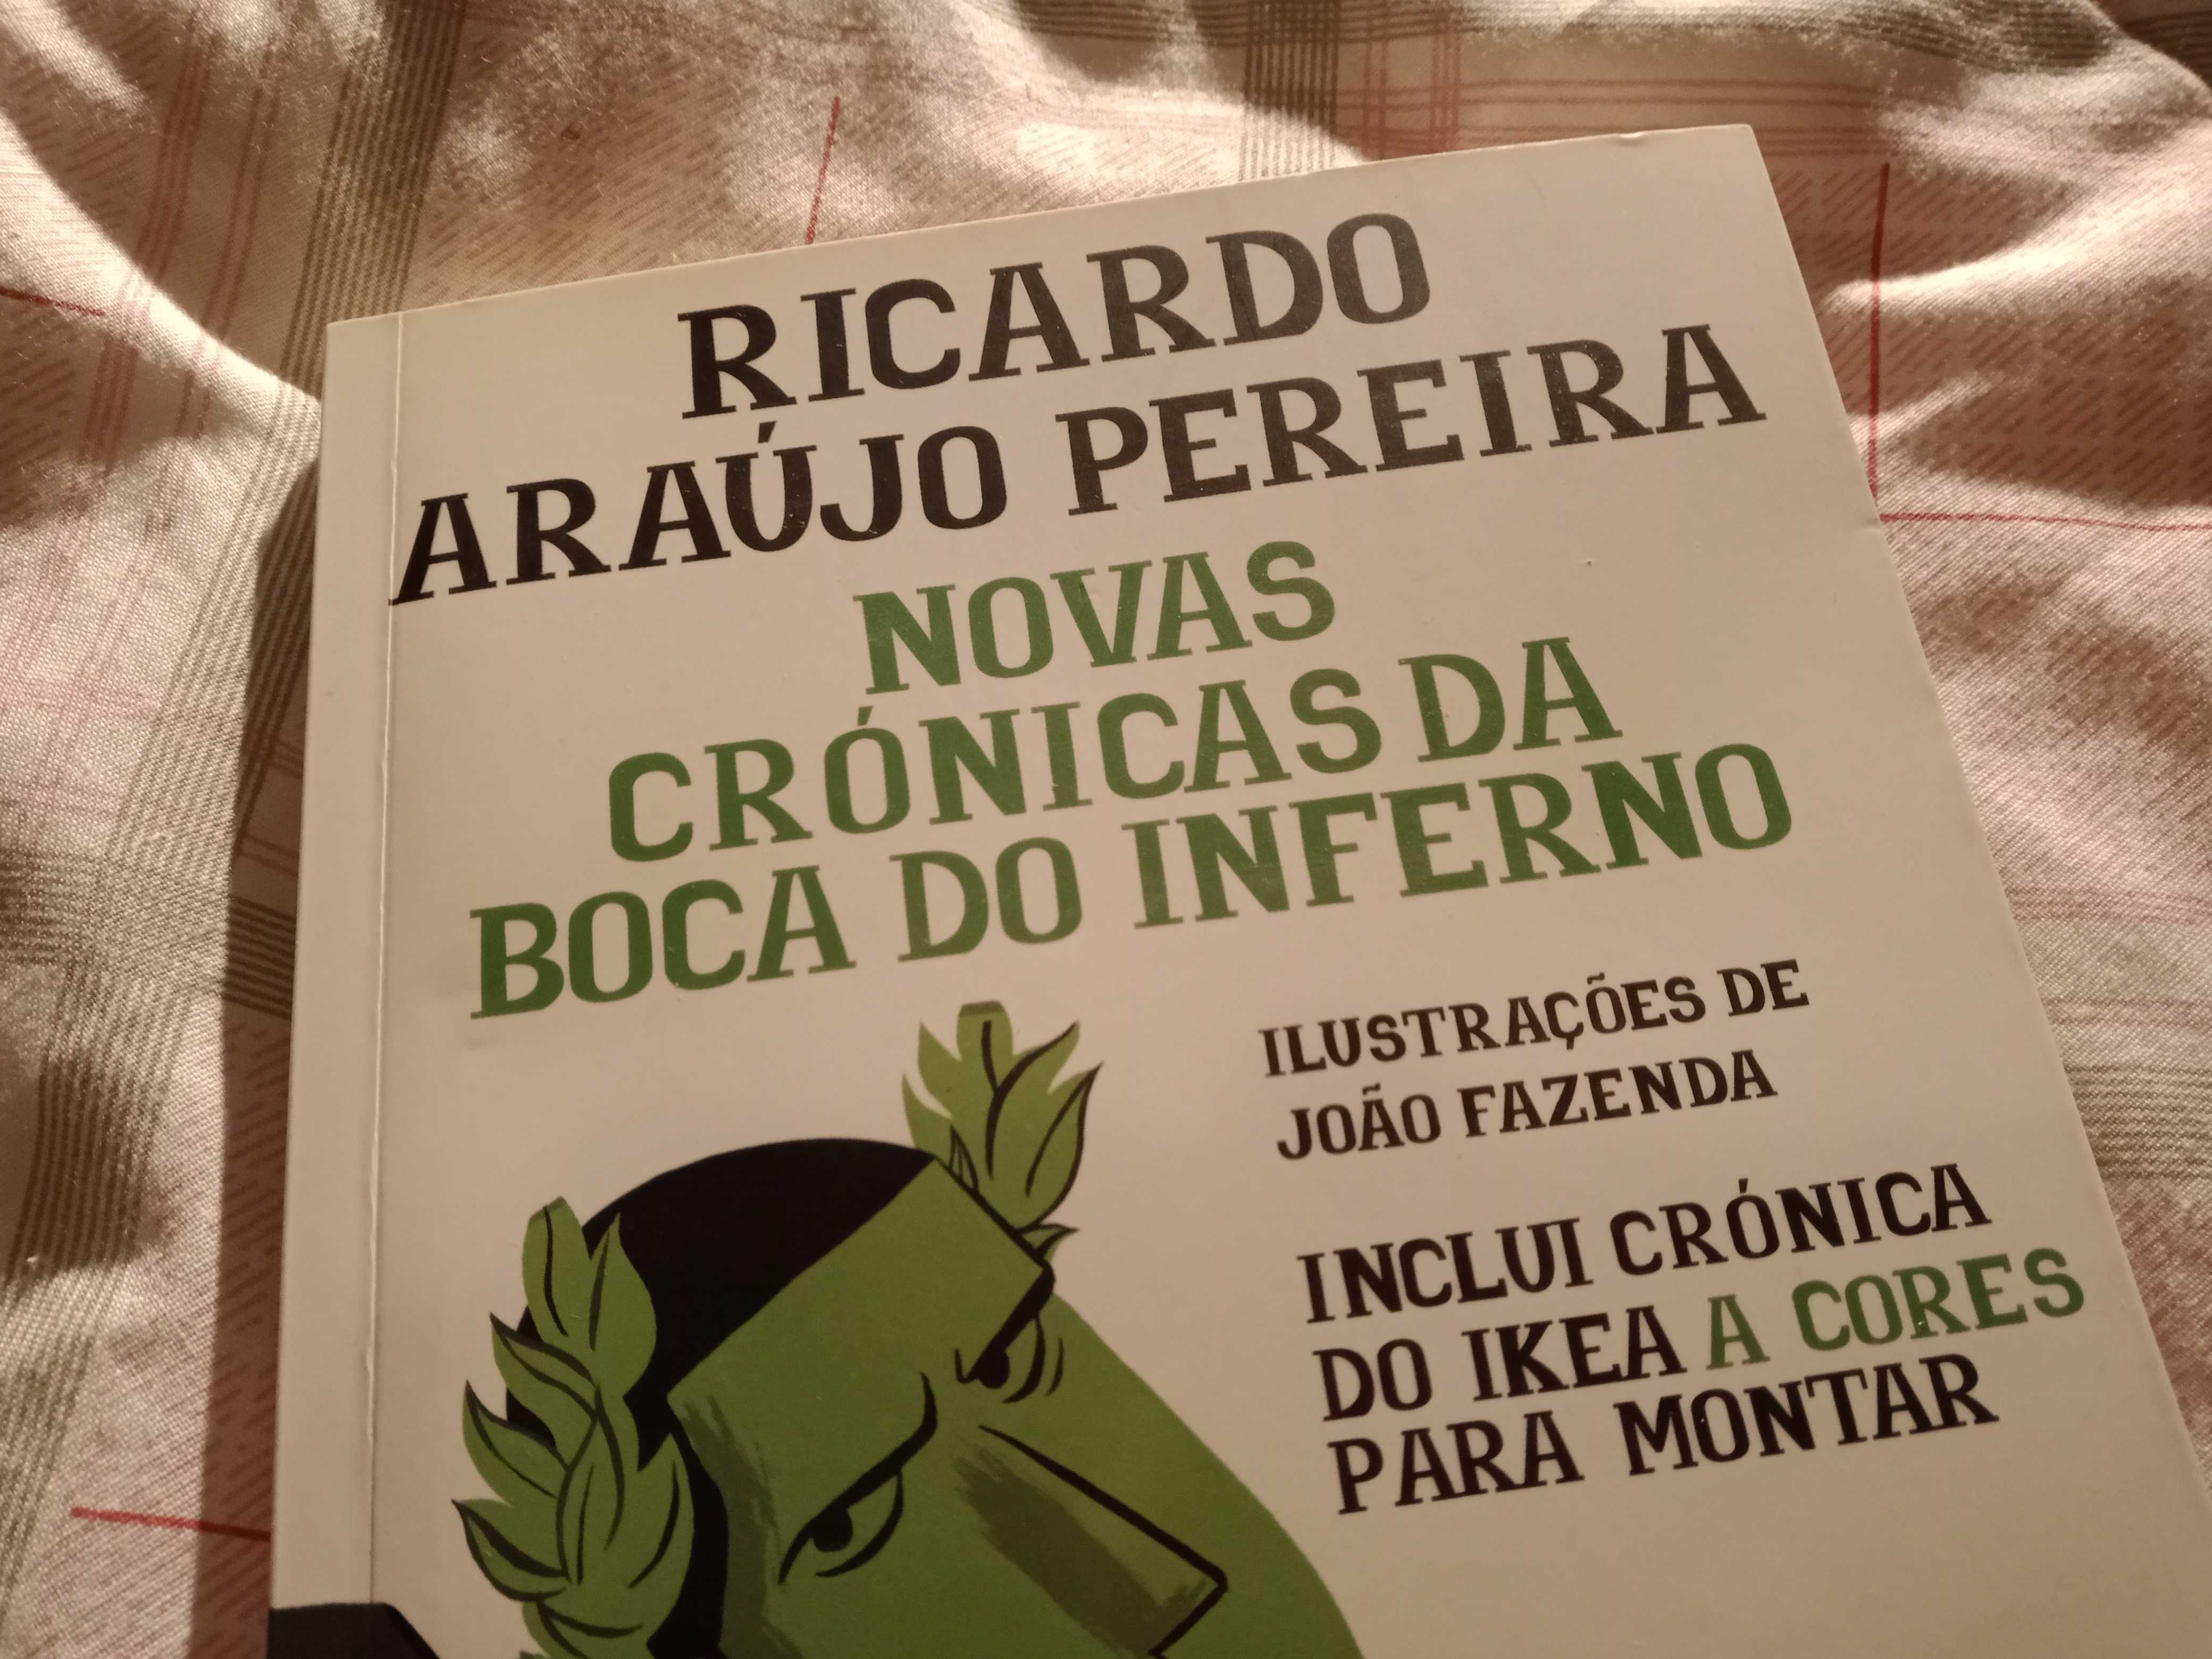 Ricardo Araújo Pereira - Novas Crónicas da Boca do Inferno (NOVO)